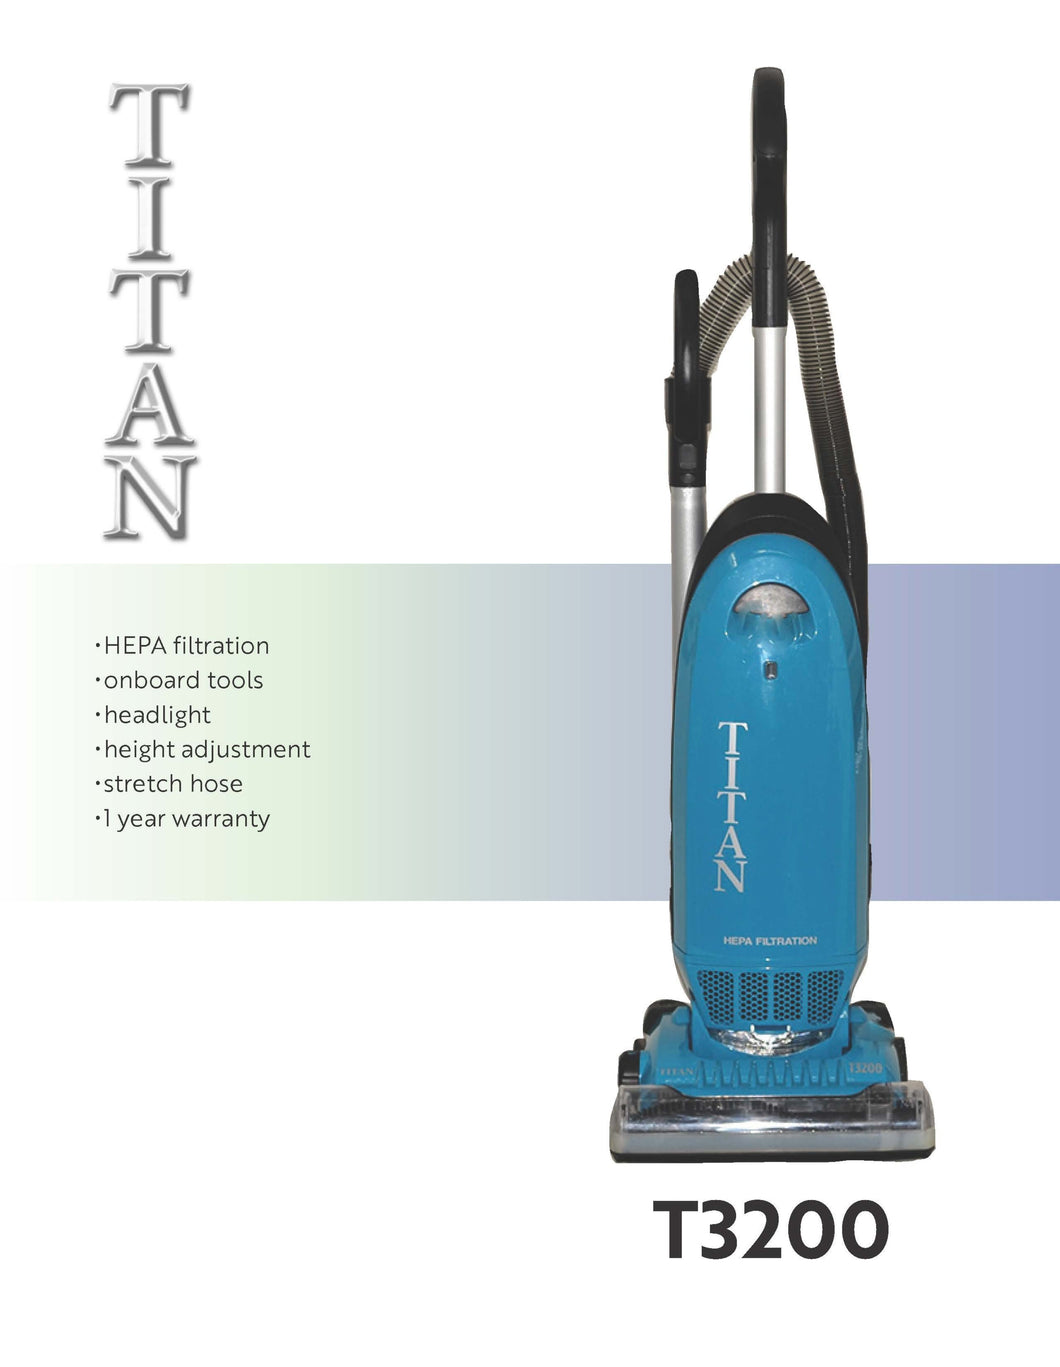 Titan T-3200 Upright Vacuum Cleaner